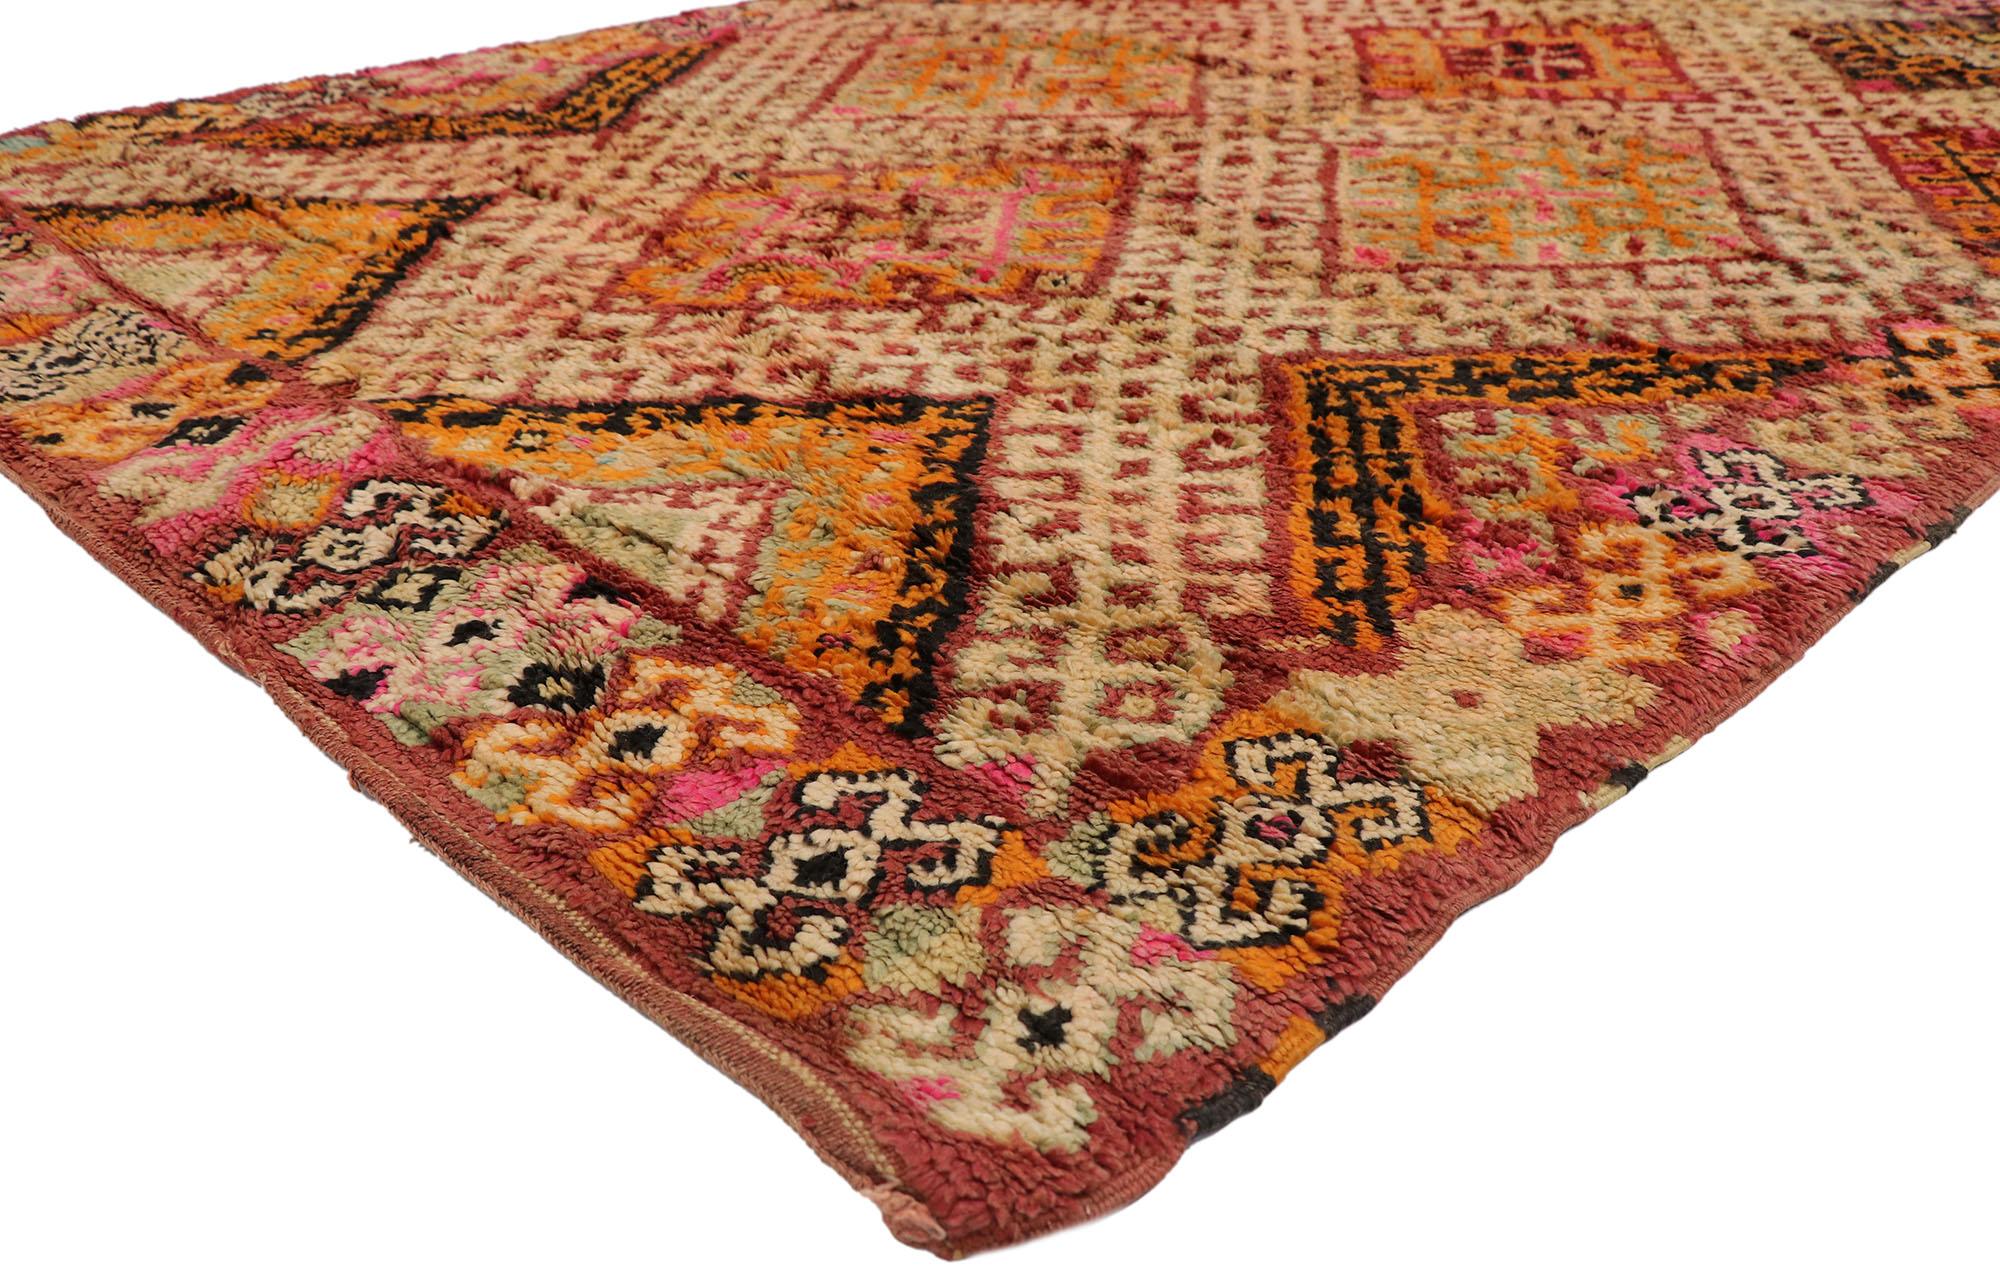 21522 Tapis marocain Vintage Beni MGuild, 06'03 x 09'04.
Ce tapis marocain vintage Beni MGuild en laine nouée à la main allie modernité du milieu du siècle et confort nomade. Le design géométrique et les teintes terreuses audacieuses de cette pièce